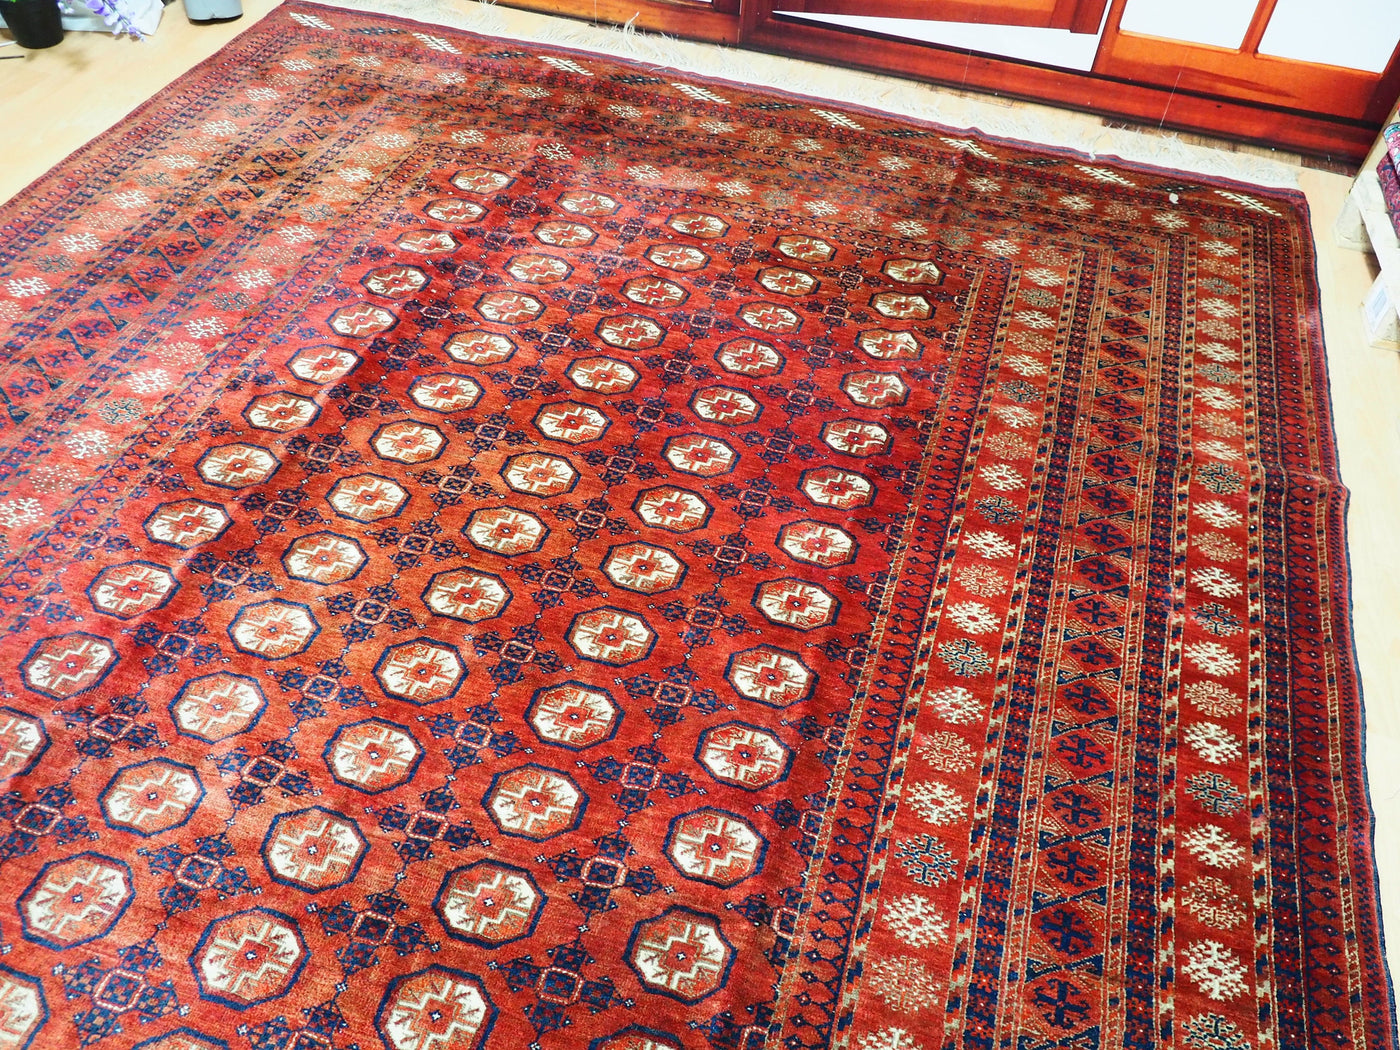 325x265 cm antik Seltener turkmen Buchara orientteppich tekke Teppich Afghanistan  Orientsbazar   